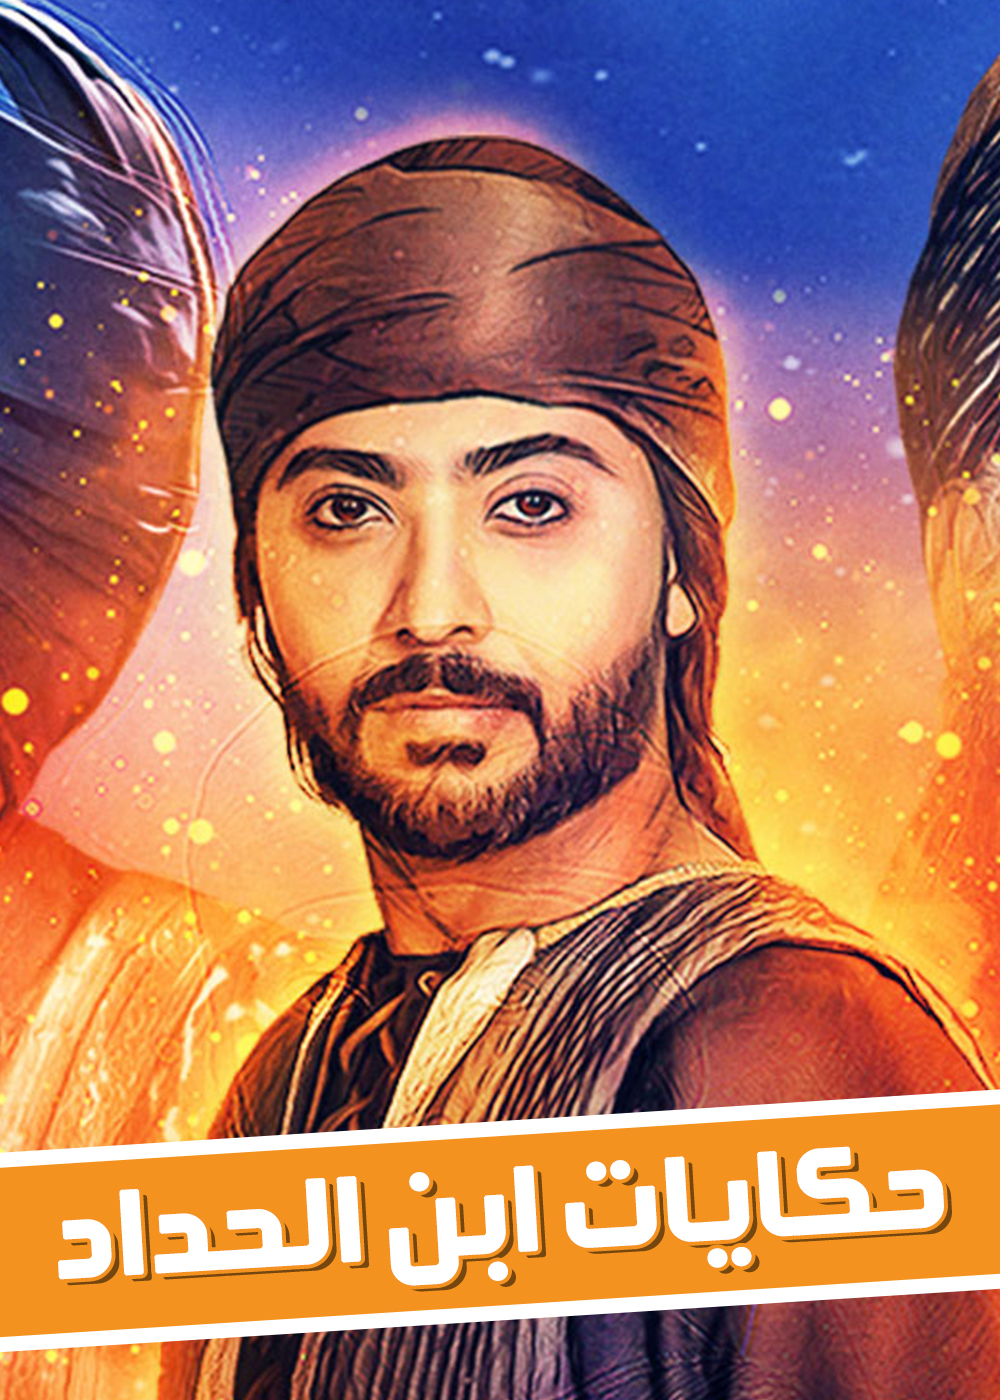 موعد وتوقيت عرض مسلسل حكايات ابن الحداد على قناة البحرين رمضان 2020